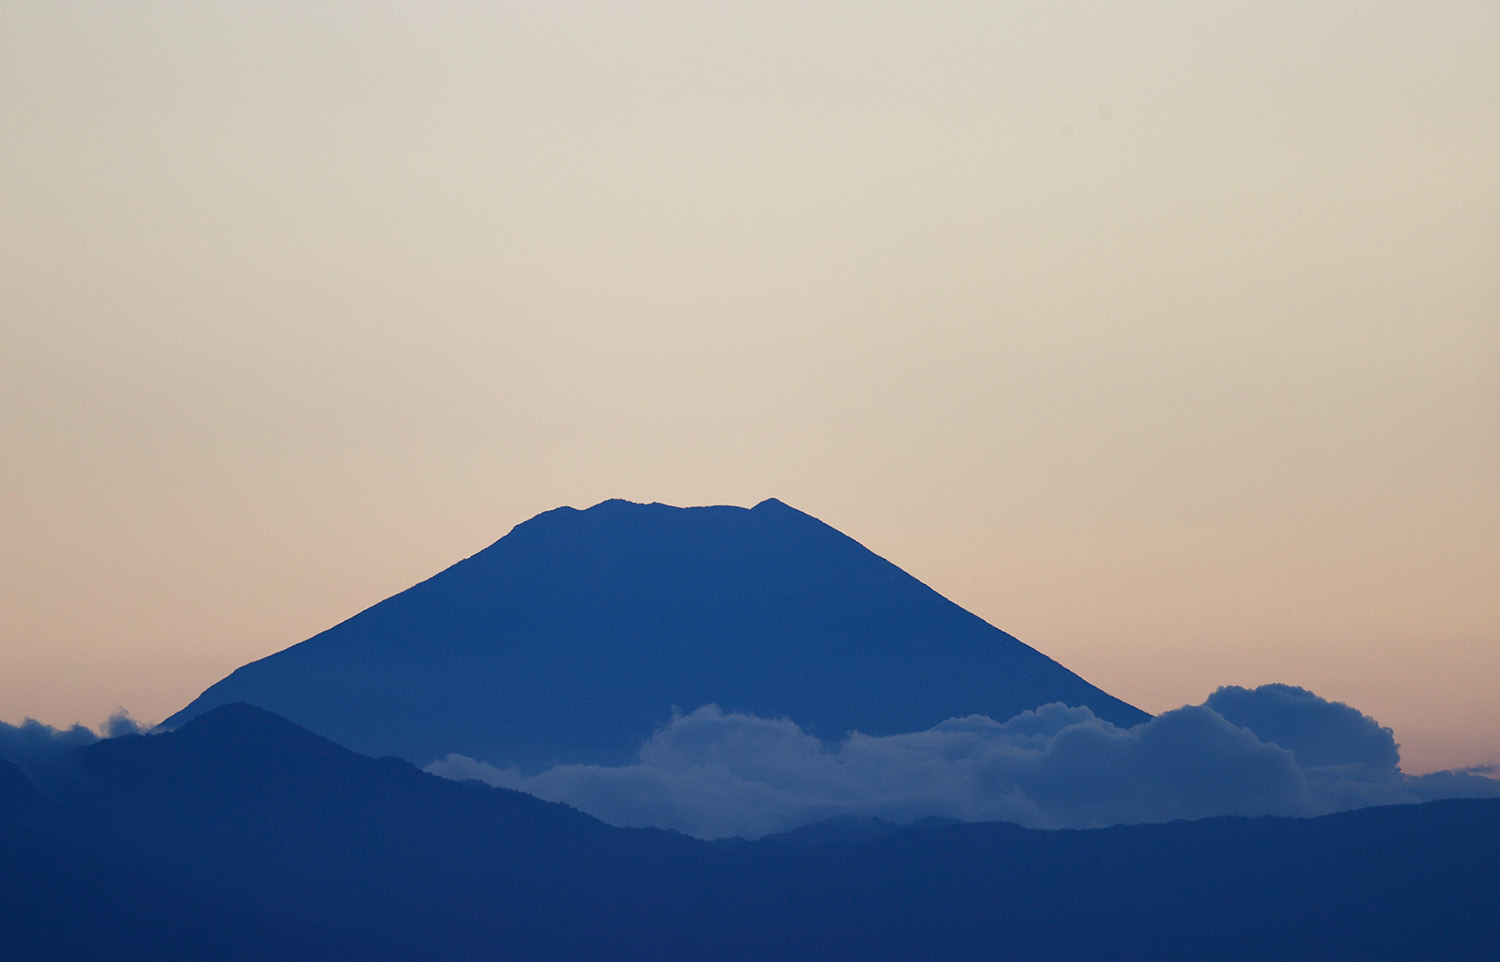 Monte Fuji em tons de azul, com céu rosado ao fundo.